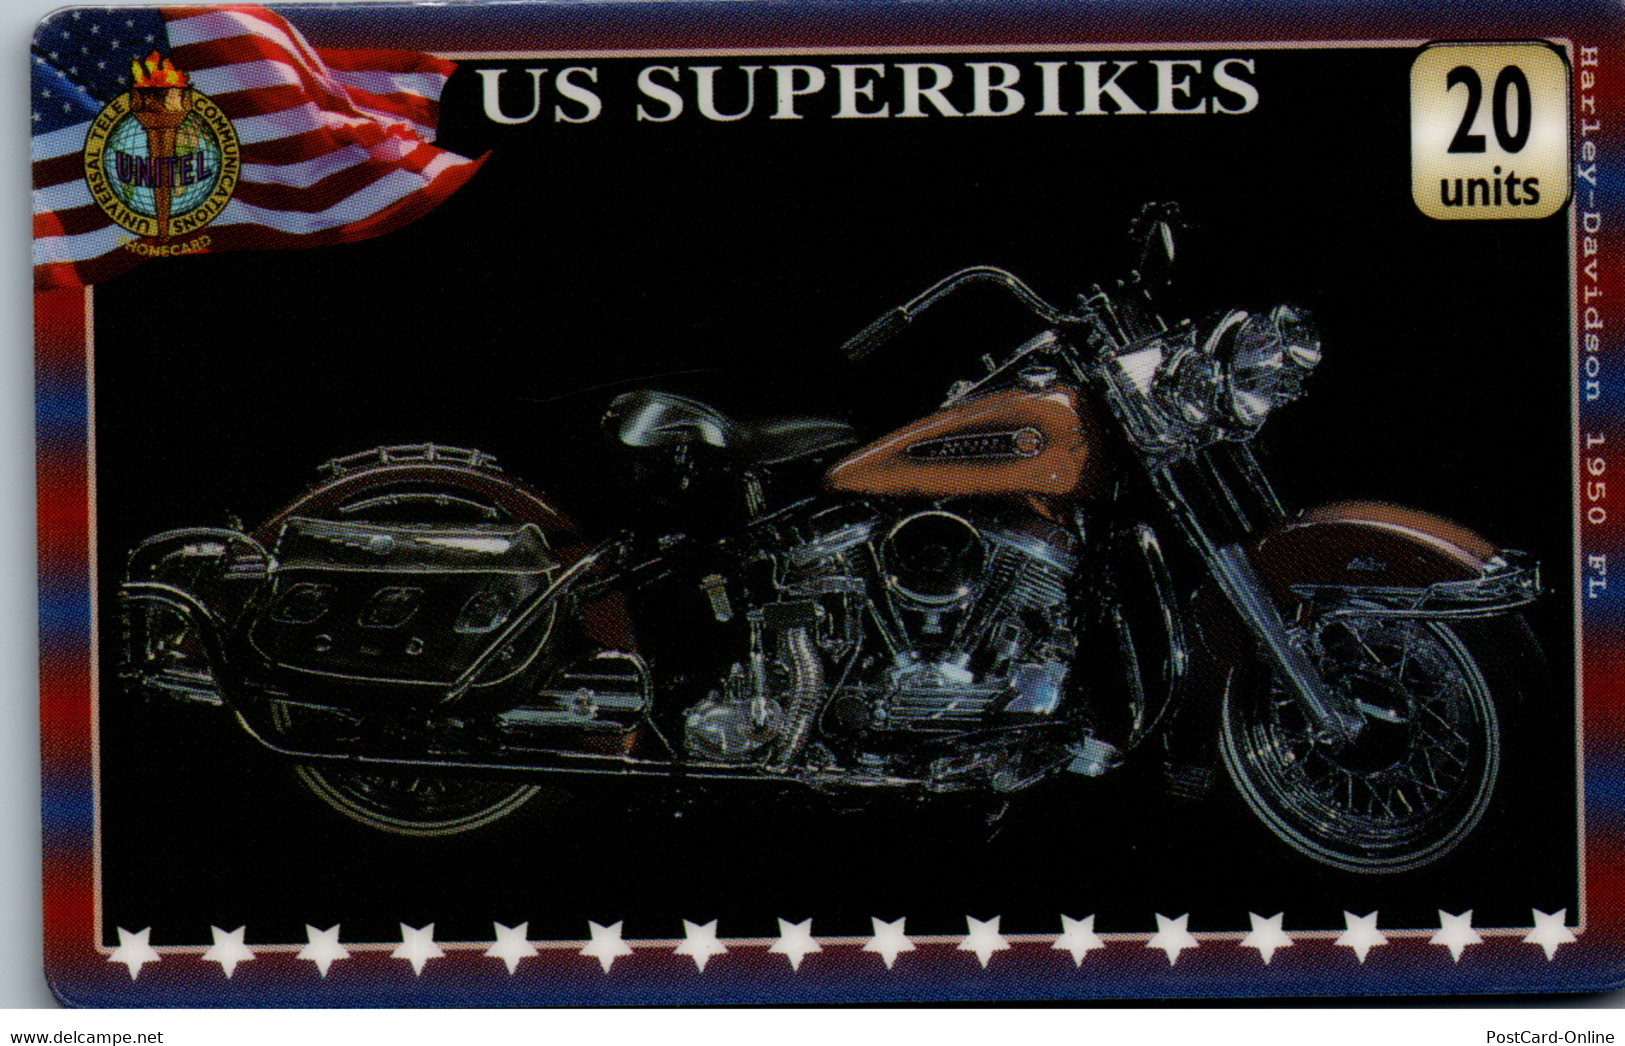 20333 - Großbritannien - UniTel , US Superbikes , Harley Davidson - BT Global Cards (Prepagadas)